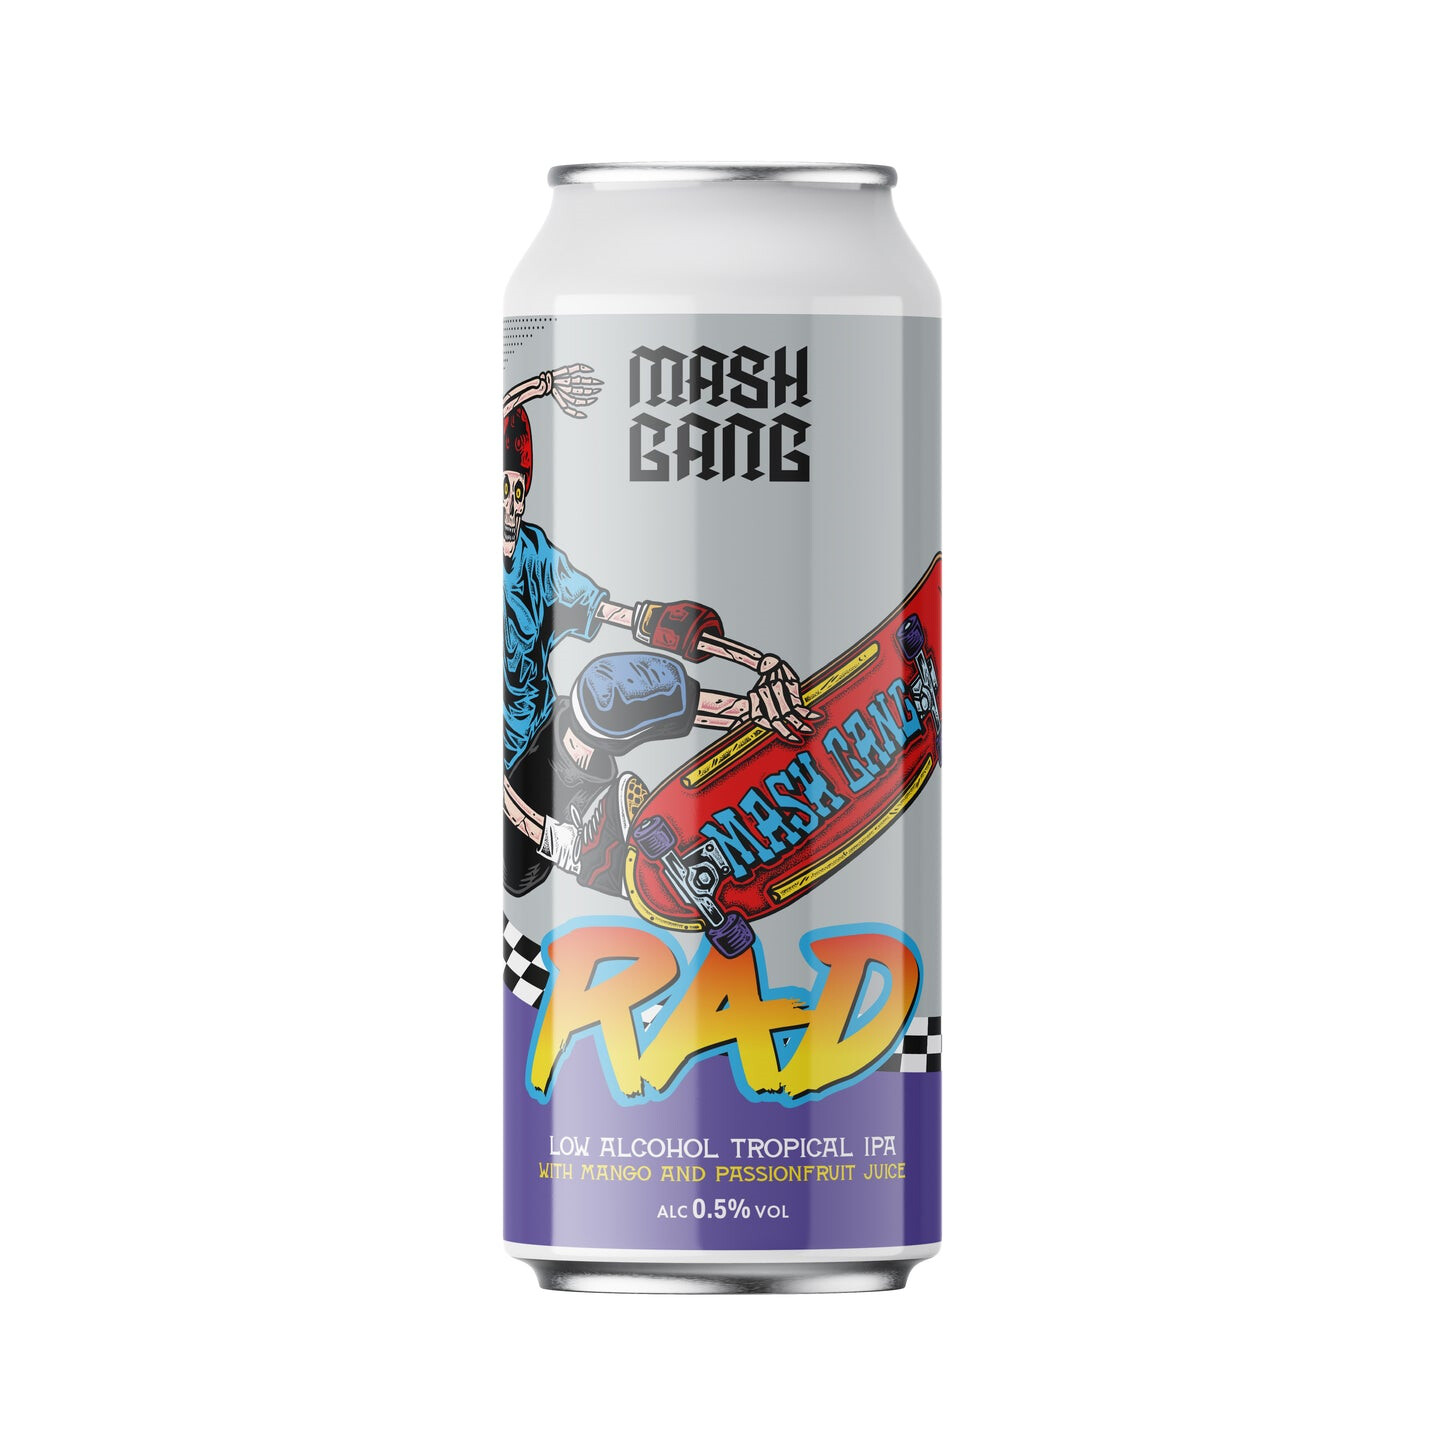 Mash Gang Rad Low Alcohol Tropical IPA